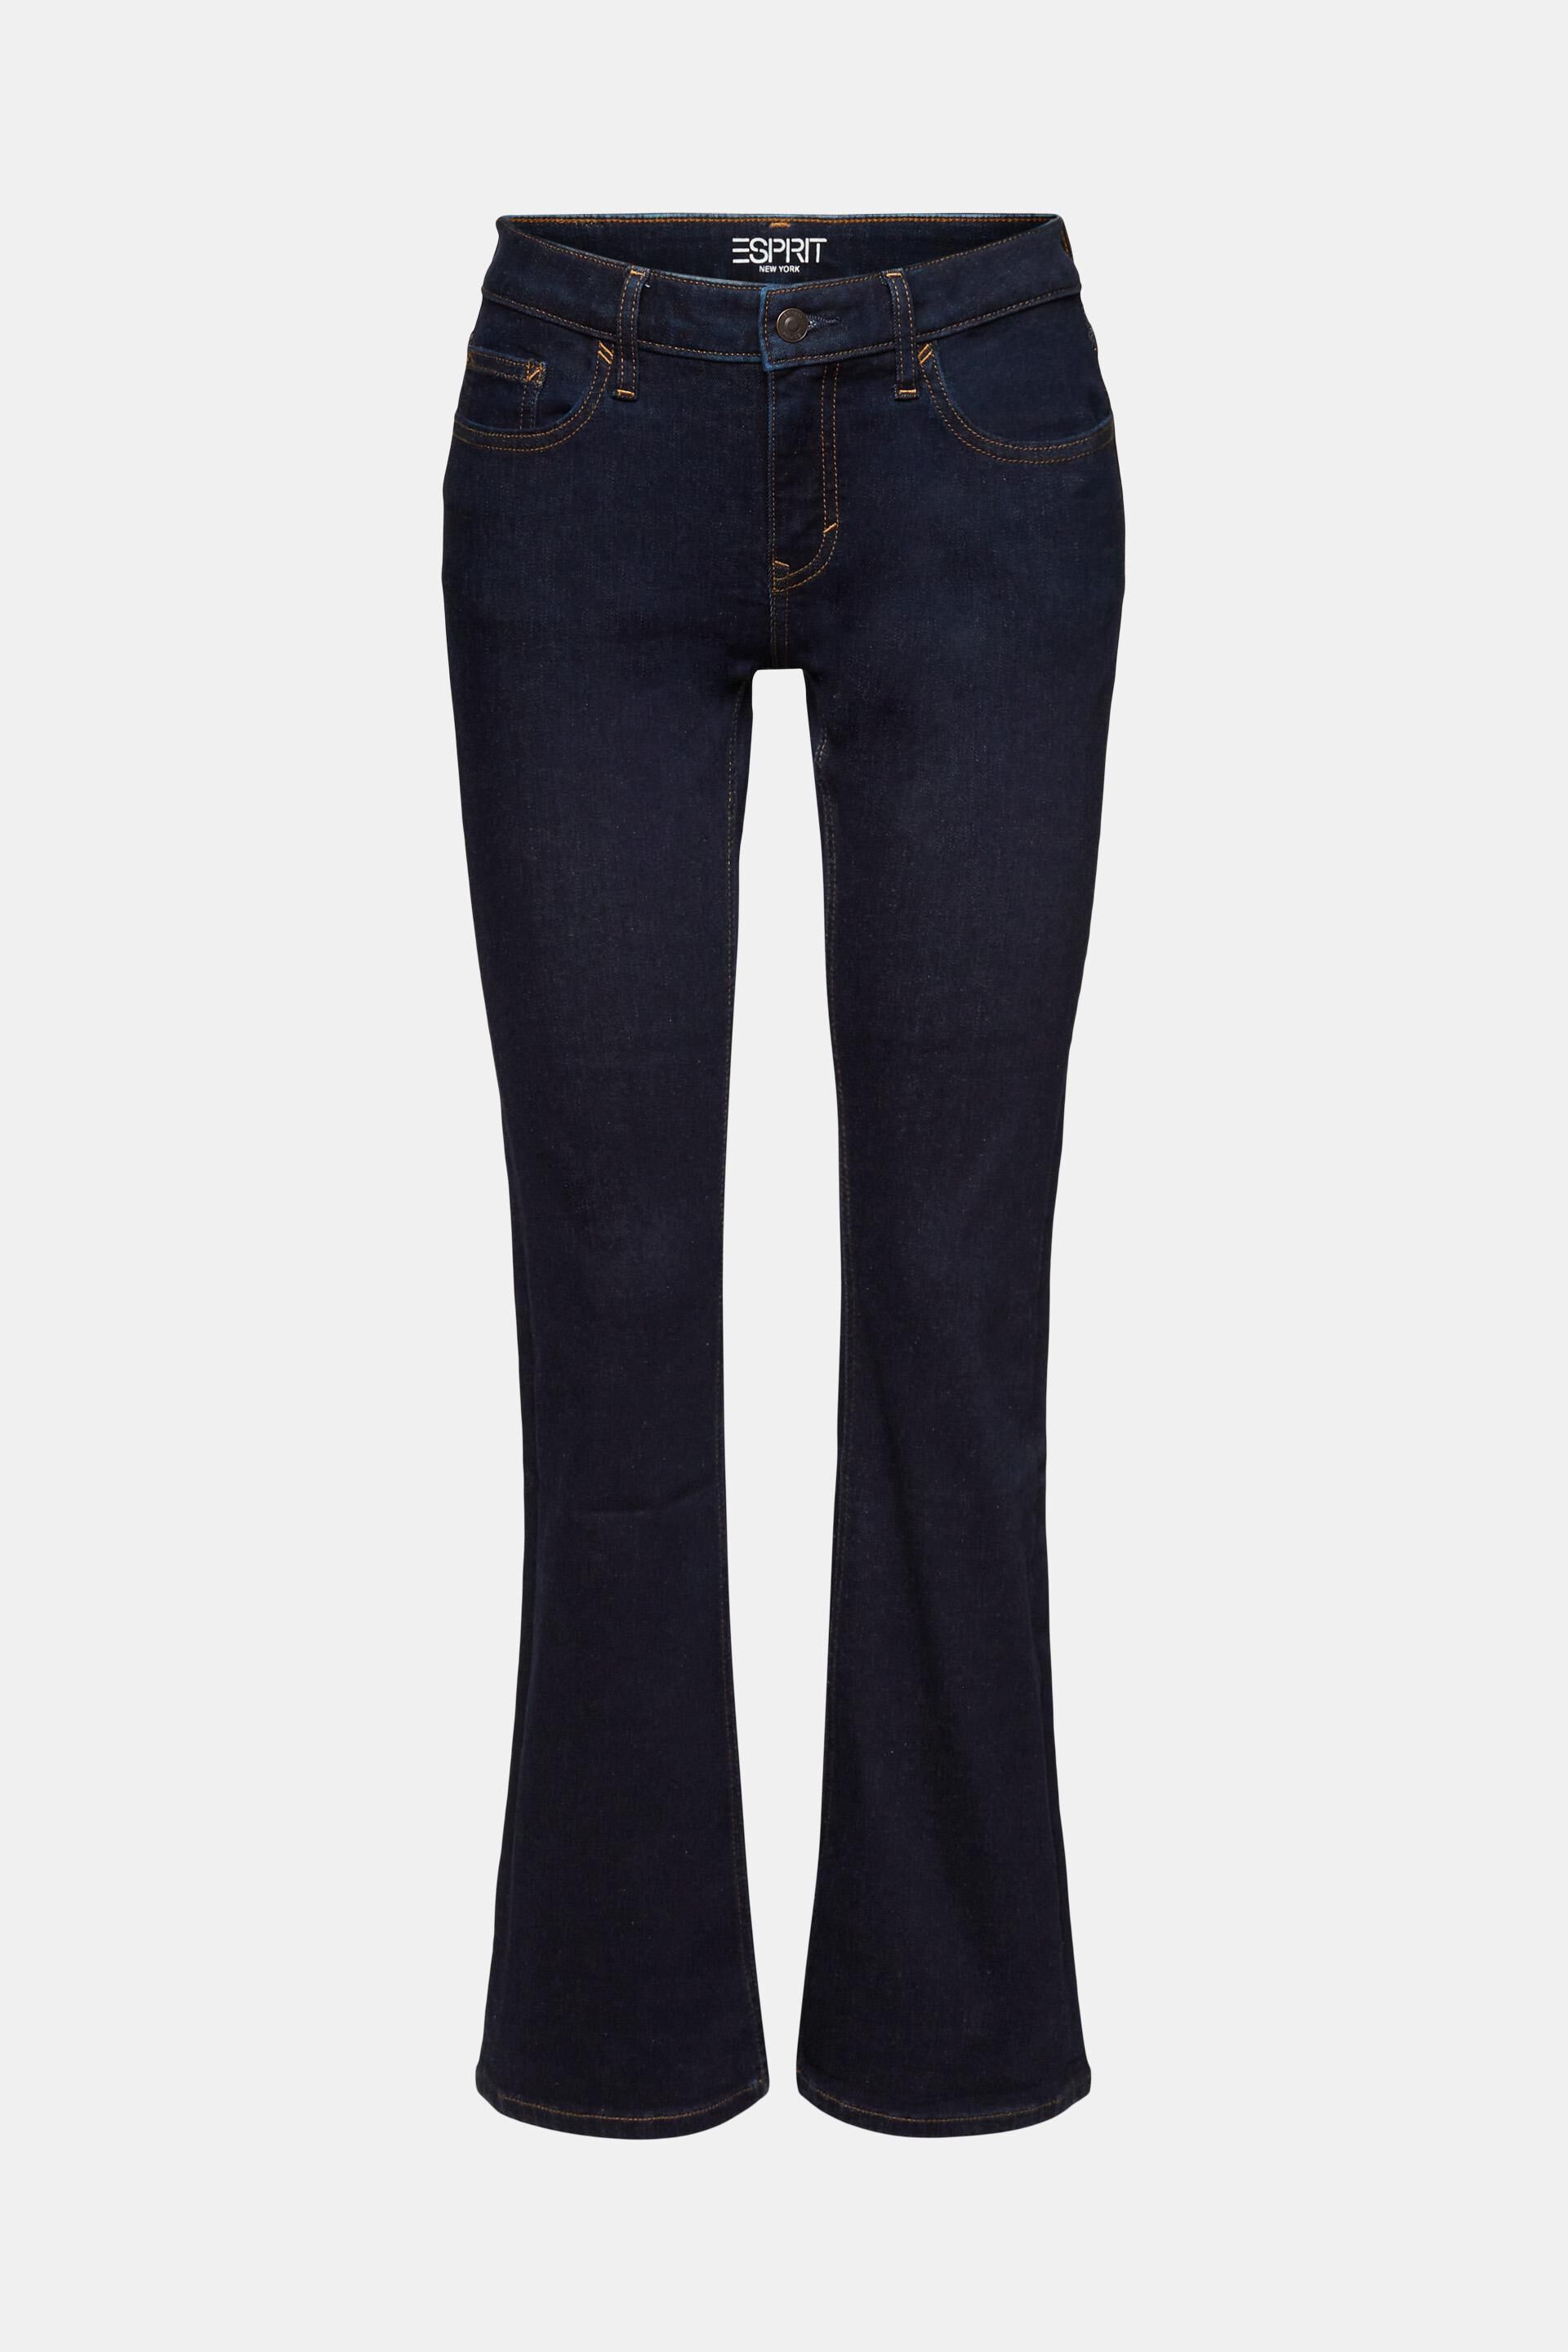 Esprit Damen Recycelt: Bootcut-Jeans mit mittlerer Leibhöhe